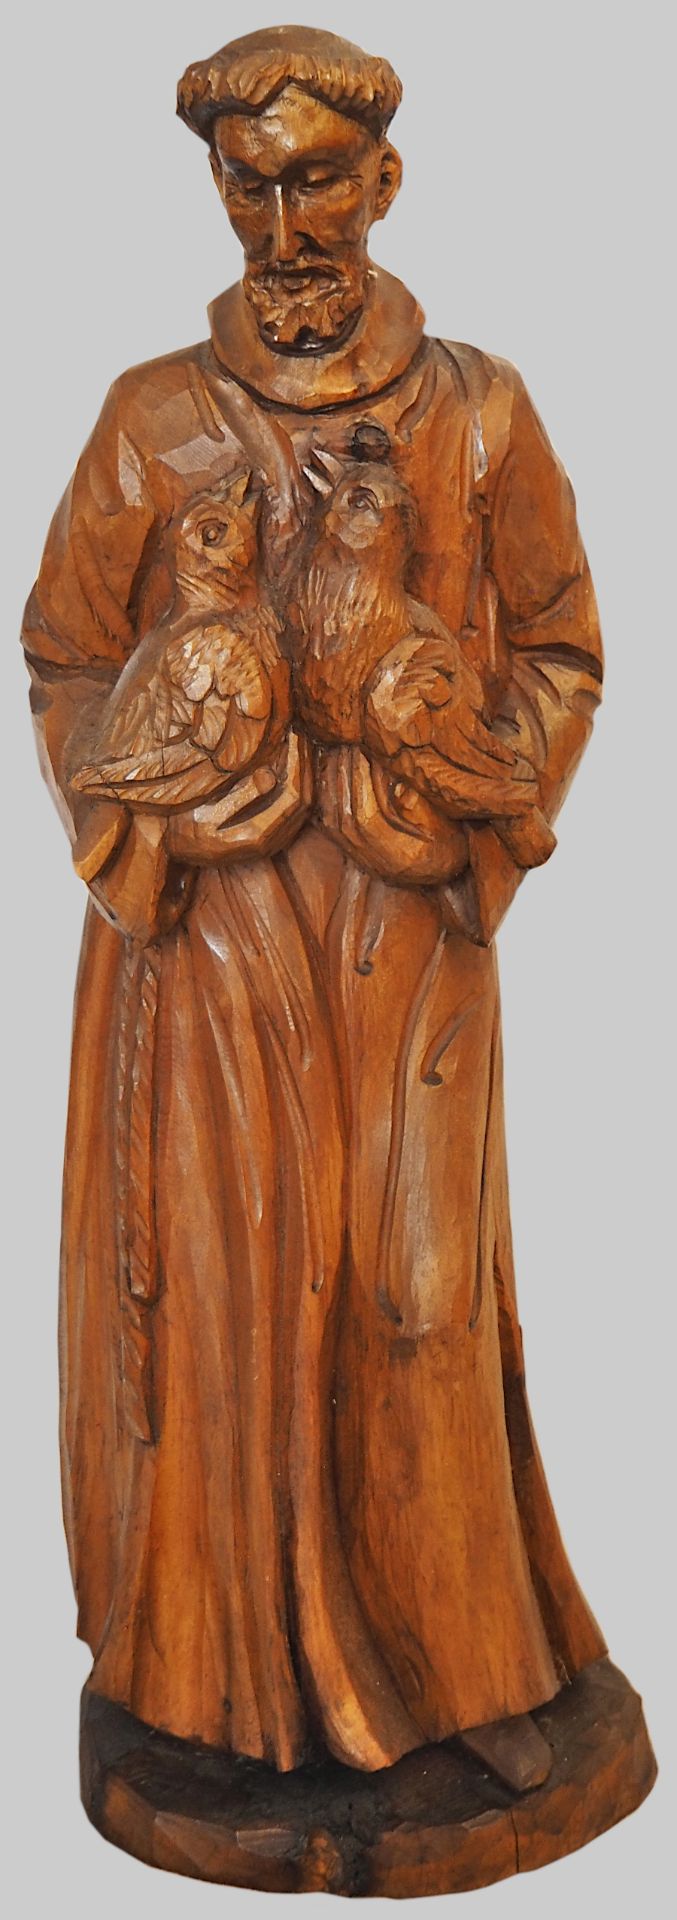 1 Holzfigur nztl. unbemalt "Hl. Franziskus mit Vogelpaar"